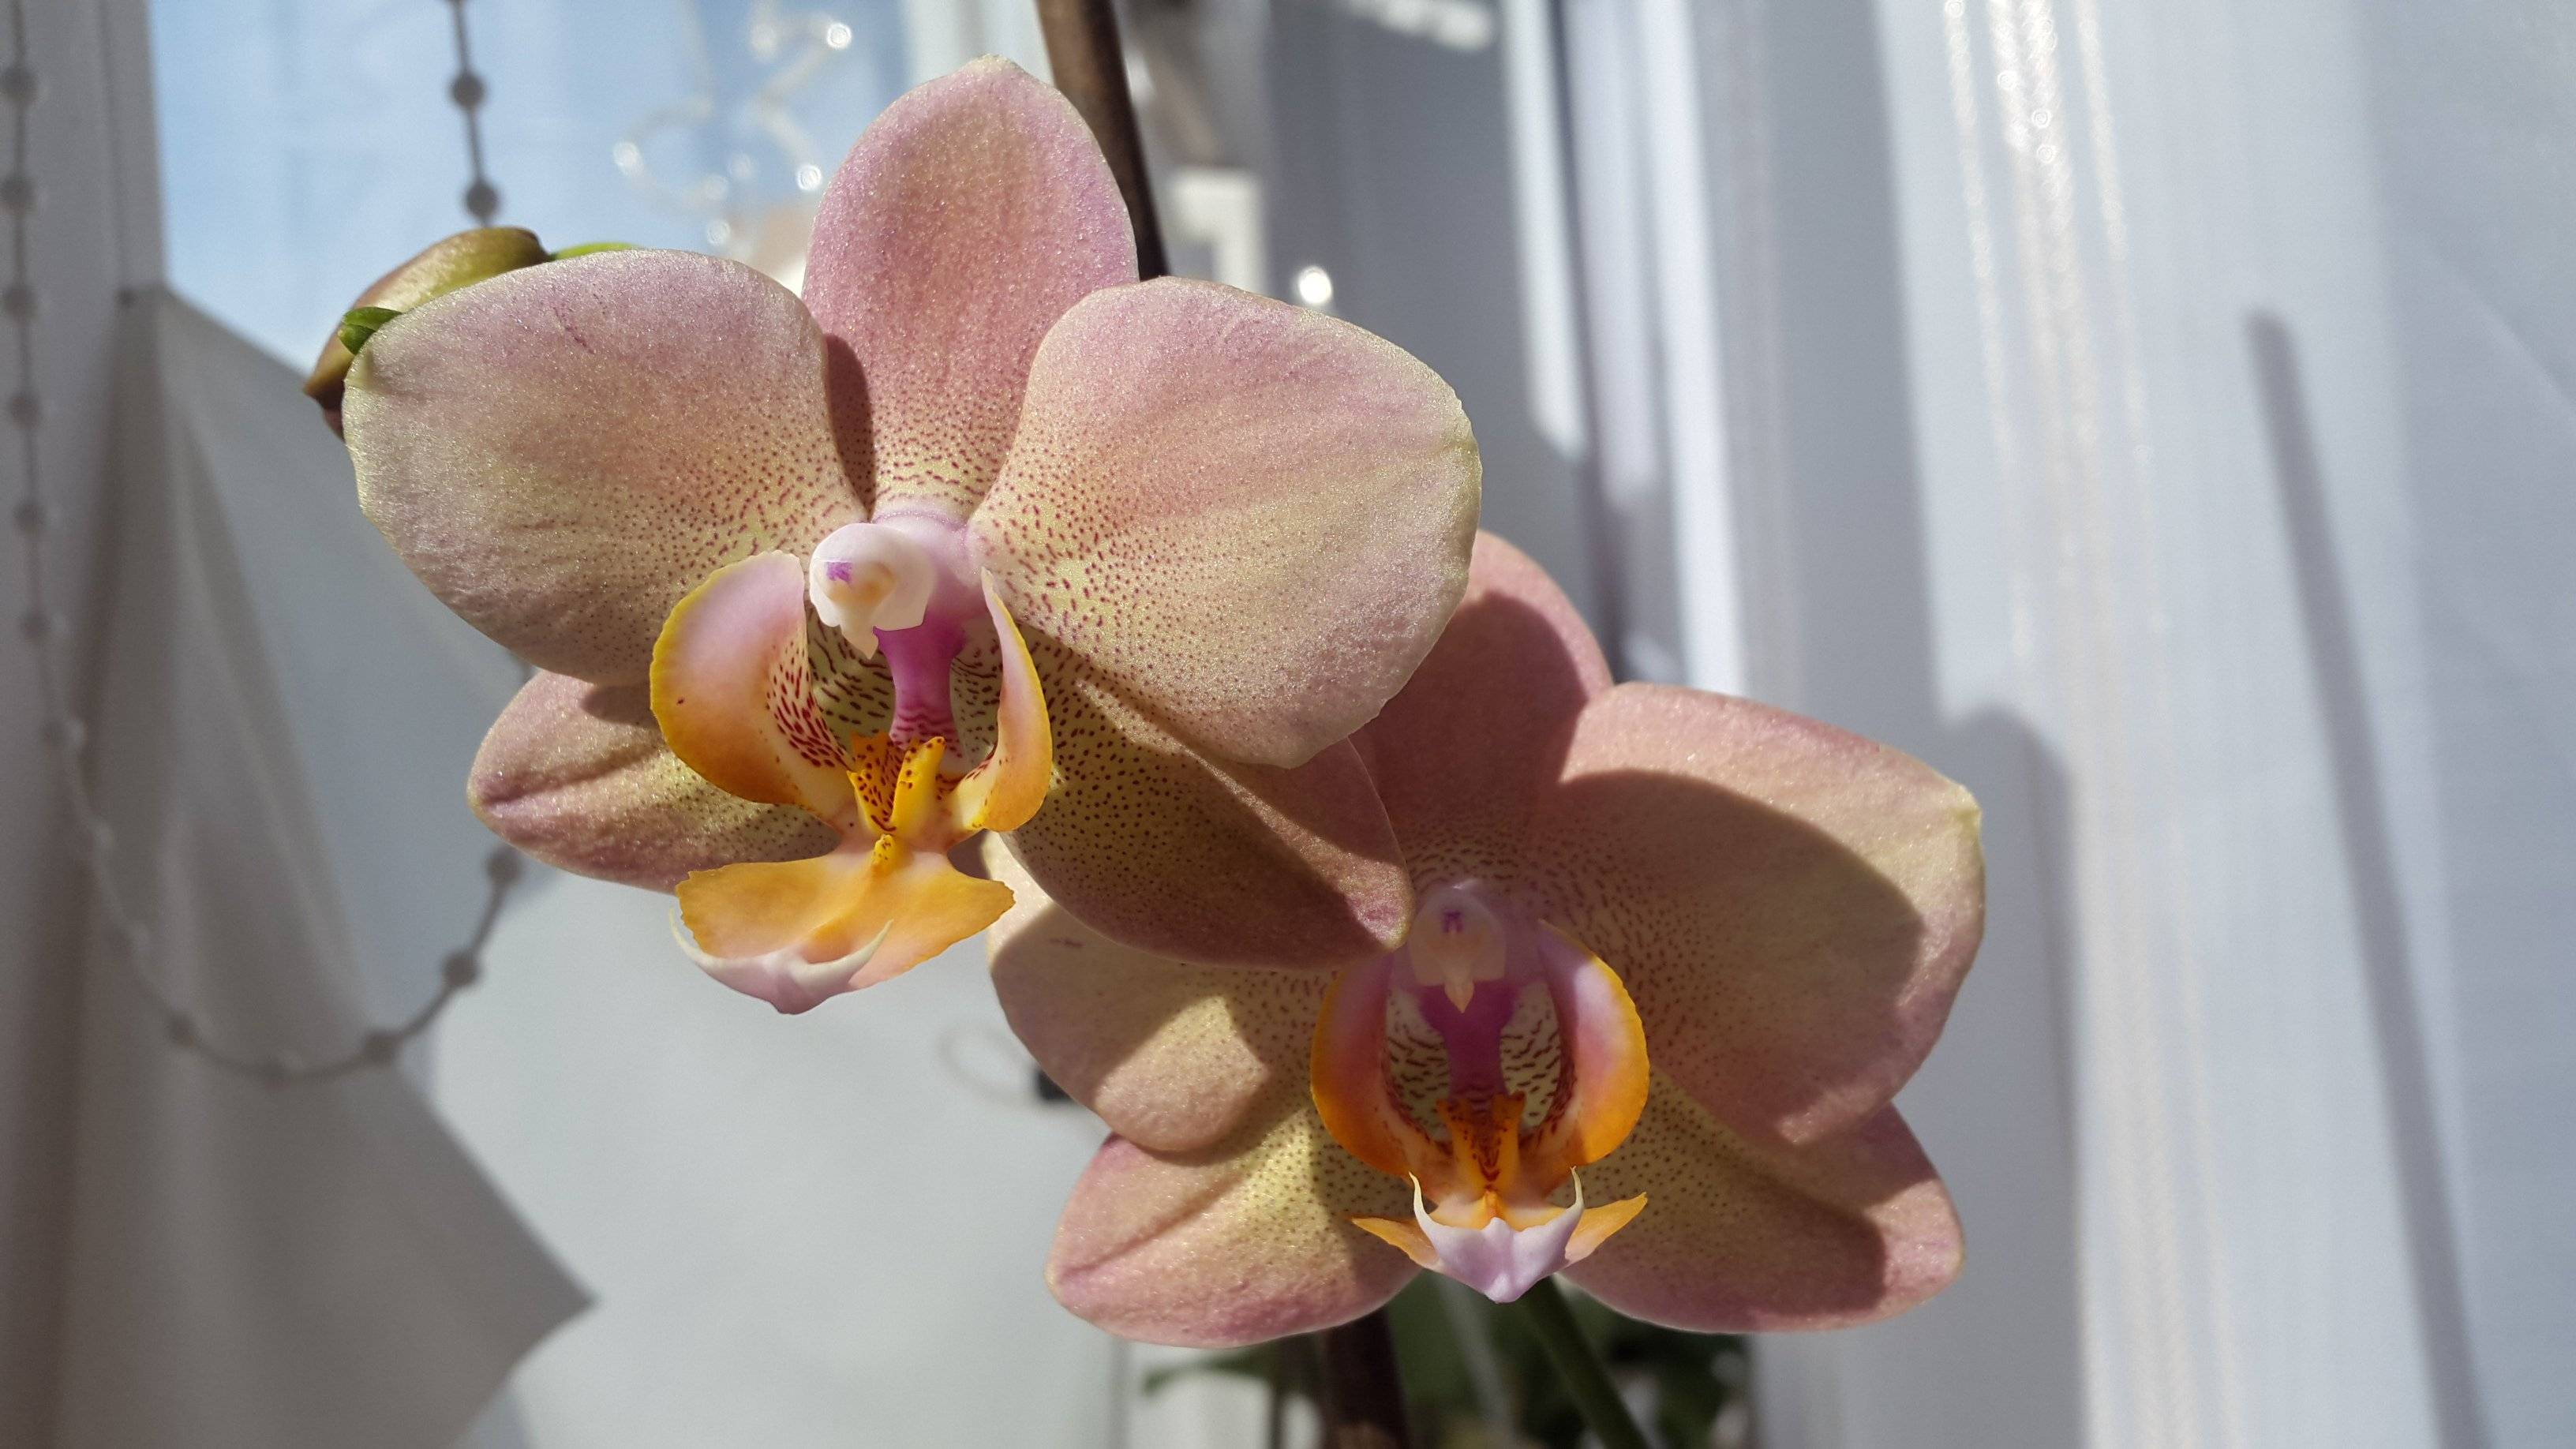 Орхидея легато: фото и описание сорта, особенности цветения, посадки, размножения и другие правила ухода в домашних условиях